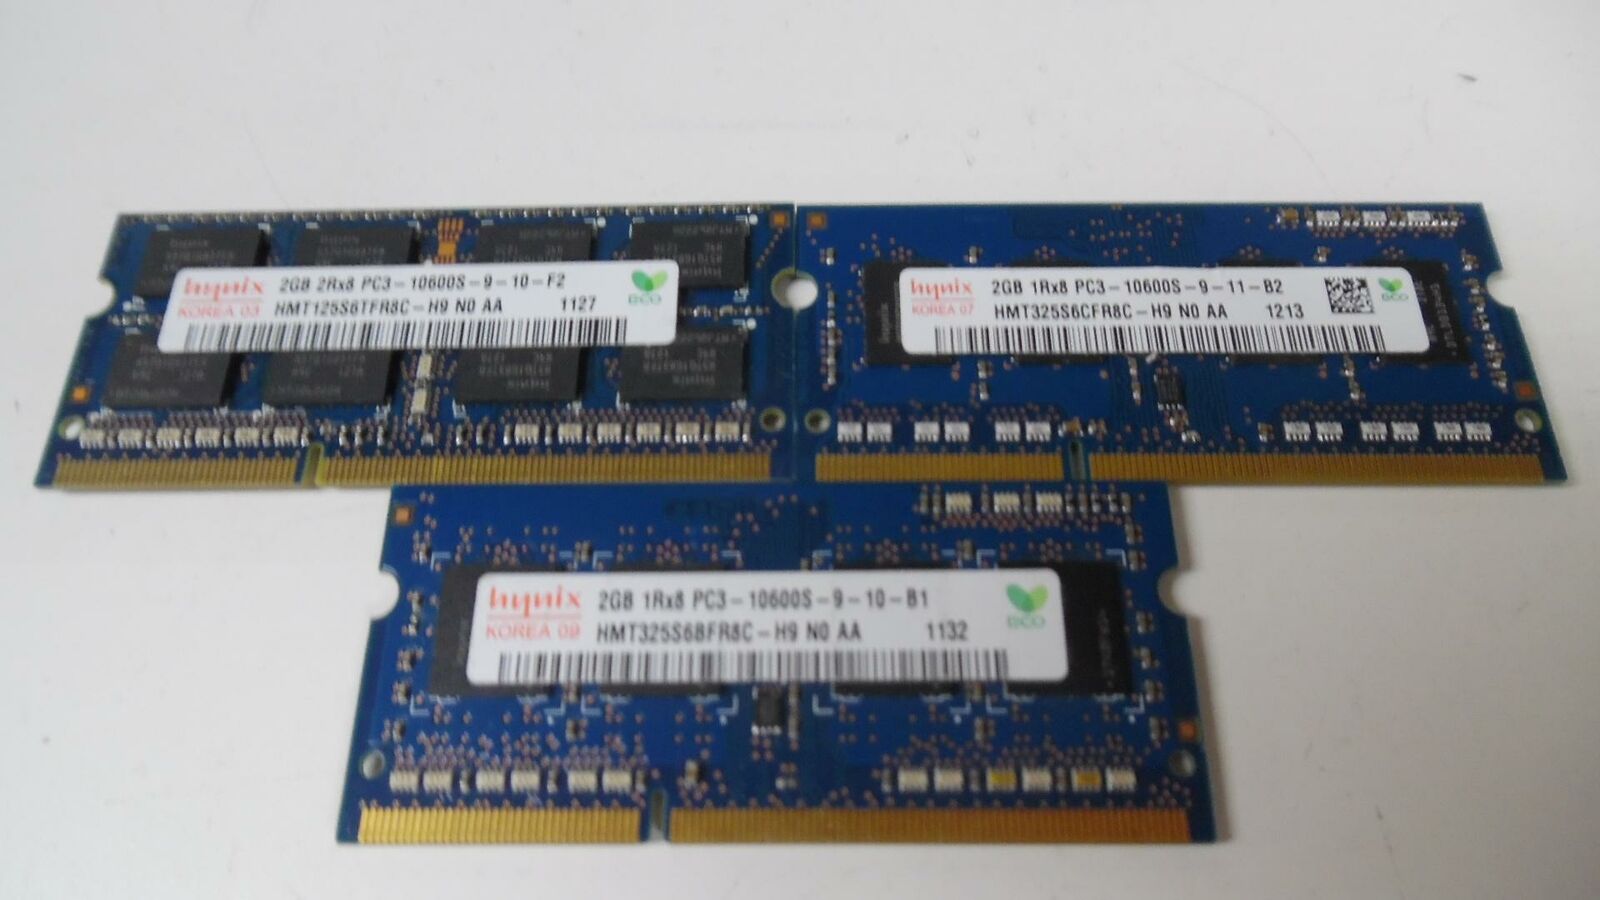 SK Hynix 6GB (2GBx3) SO-DIMM DDR3 PC3-10600S Module - HMT325S6BFR8C-H9 - Tested